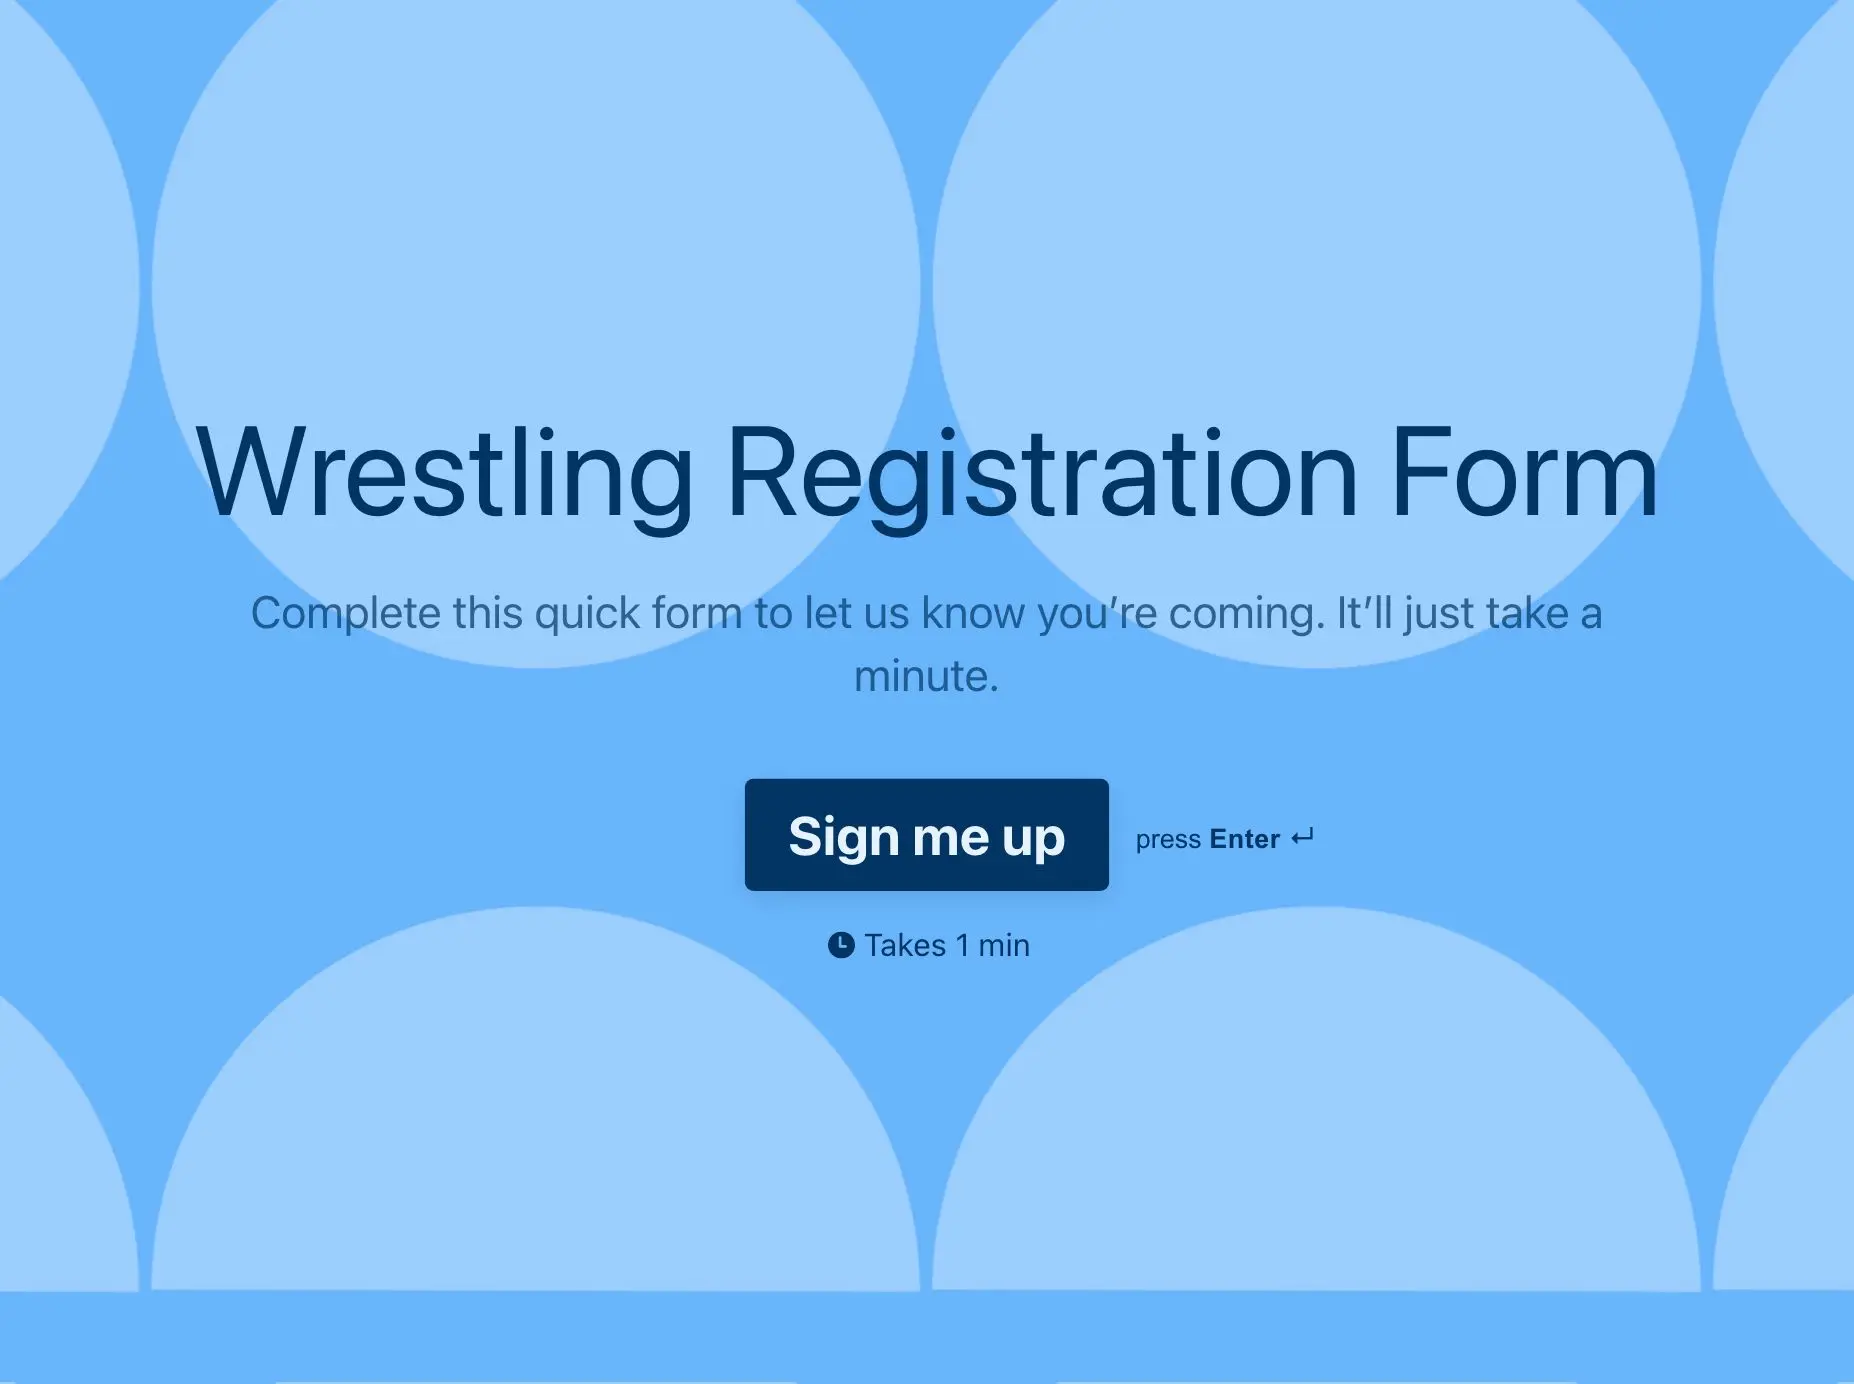 Wrestling Registration Form Template Hero